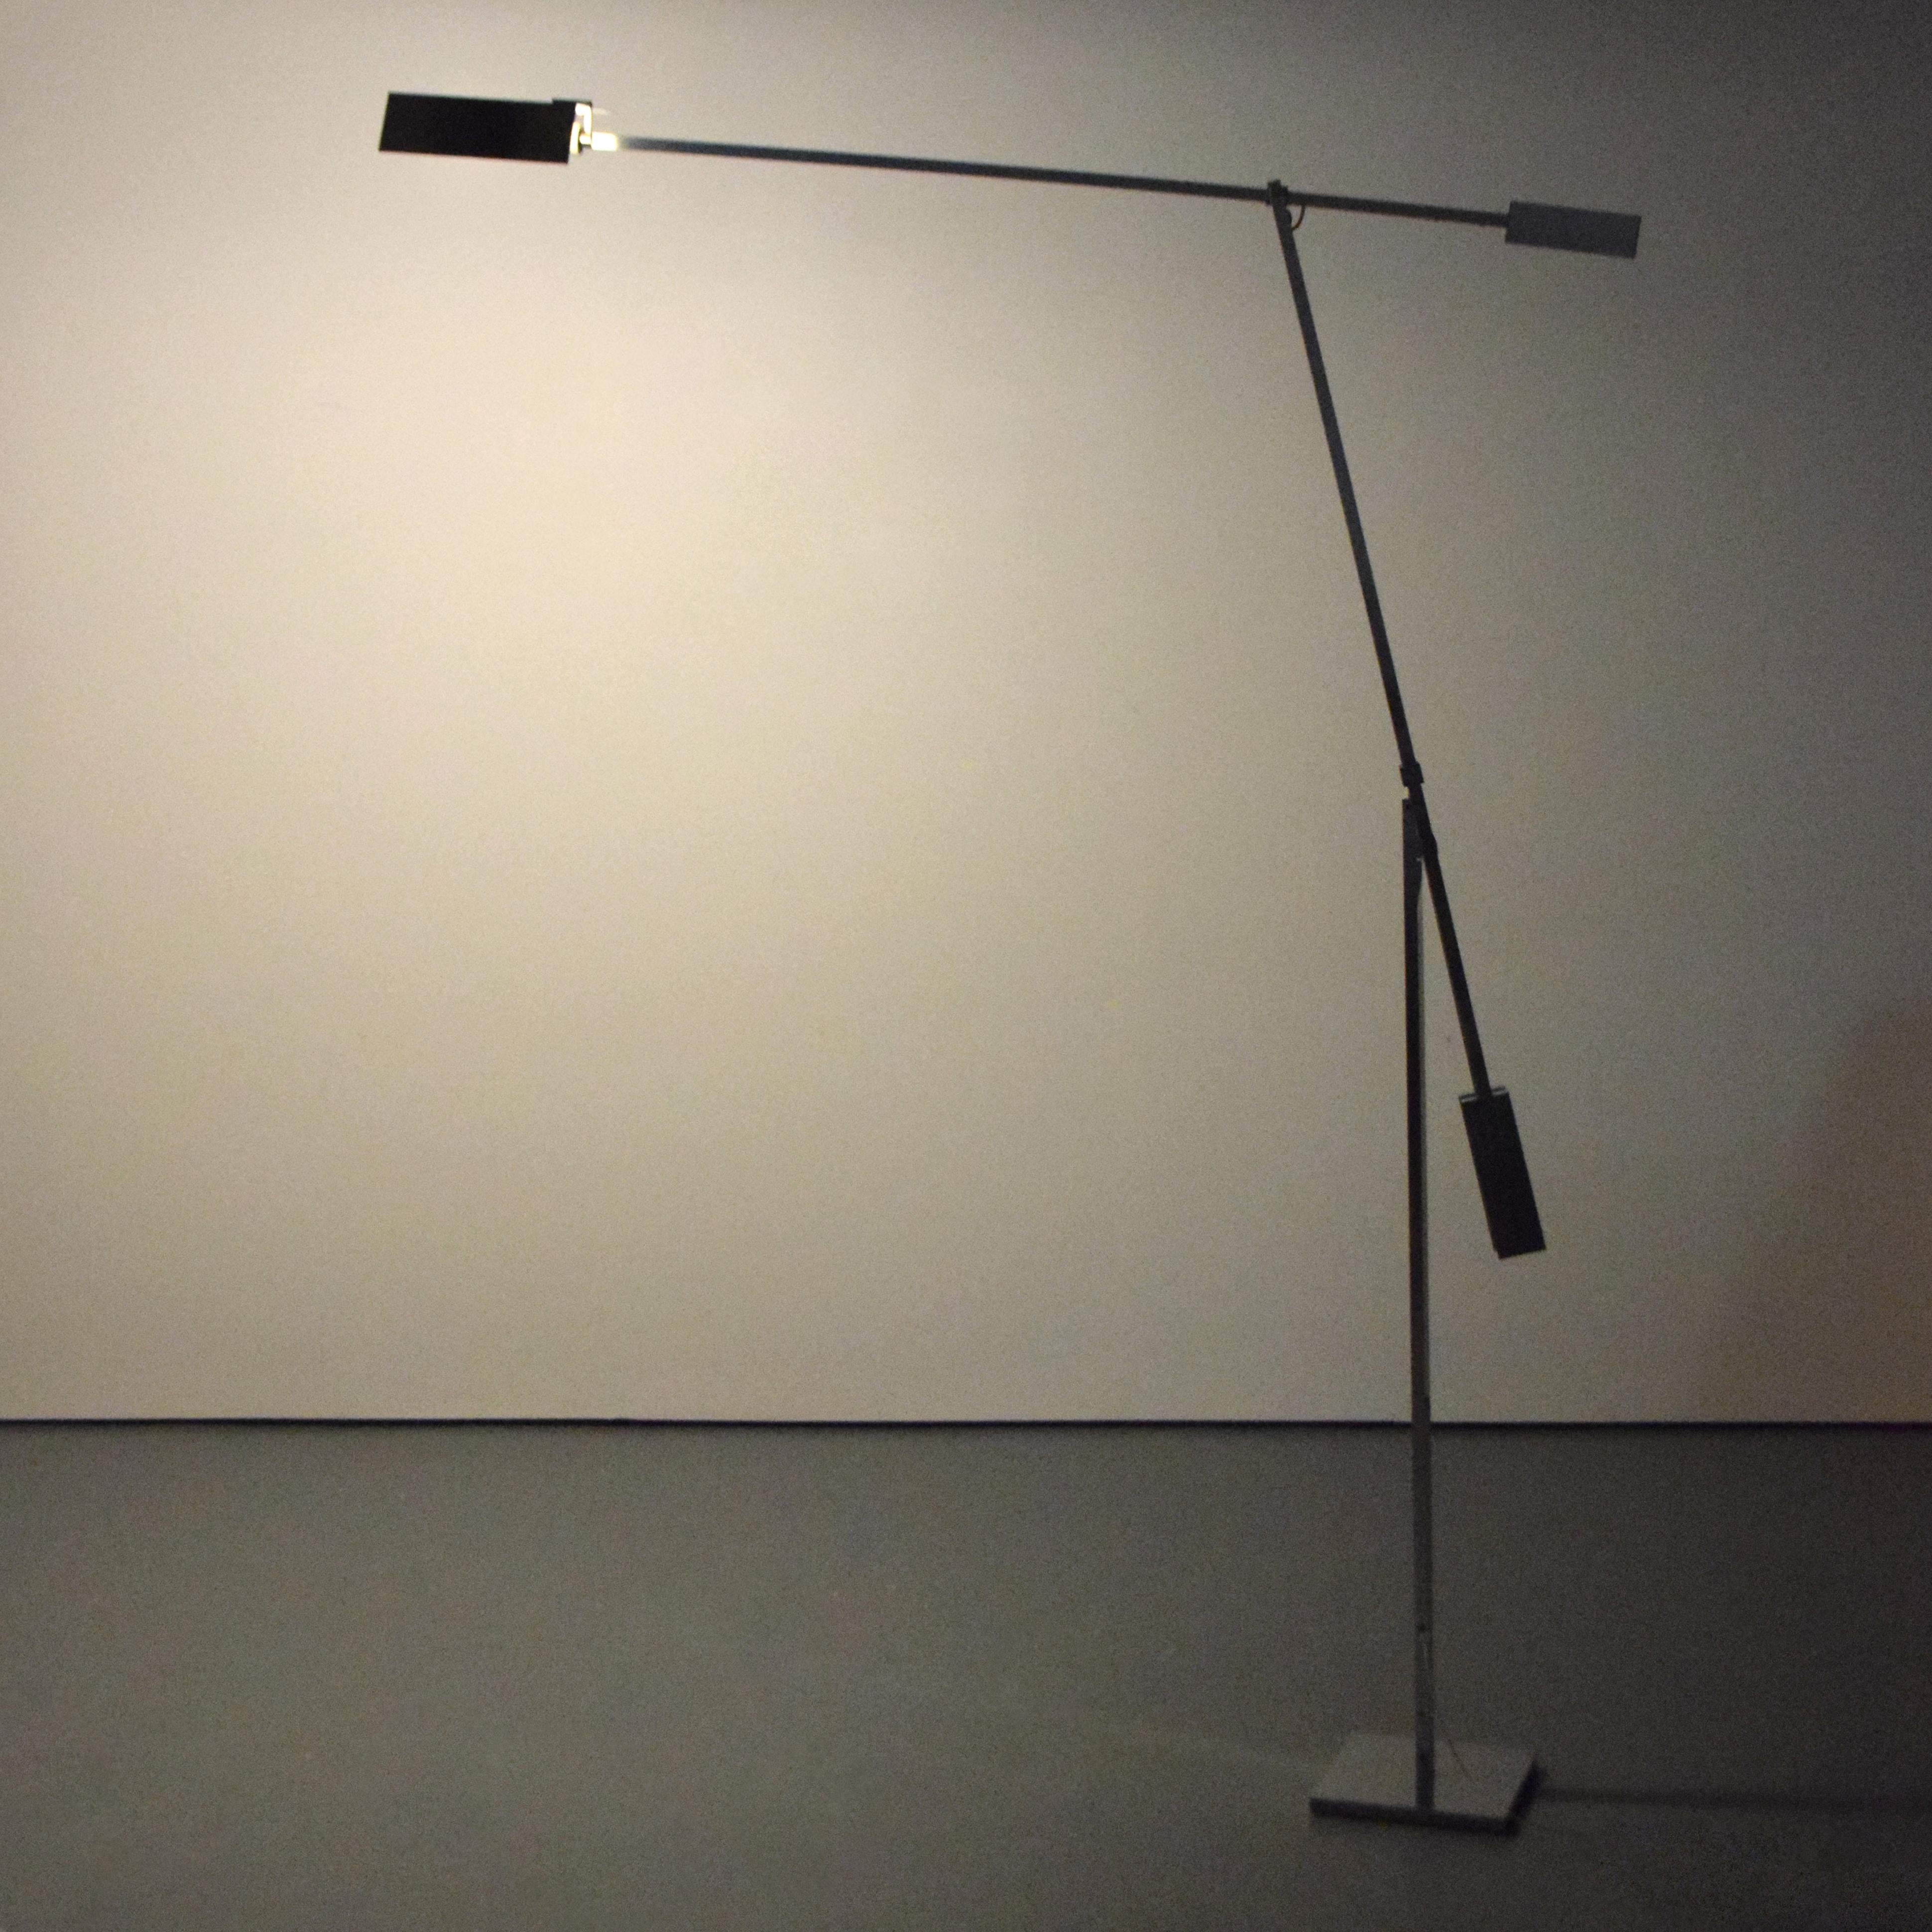 Künstler/Designer: Angelo Brotto (Italiener, 1914-2002); Esperia

Zusätzliche Informationen: Die Lampe hat eine Lichtfassung und einen verstellbaren Arm.

Markierung(en); Anmerkungen: keine Markierung(en) ersichtlich

Herkunftsland; MATERIALIEN: